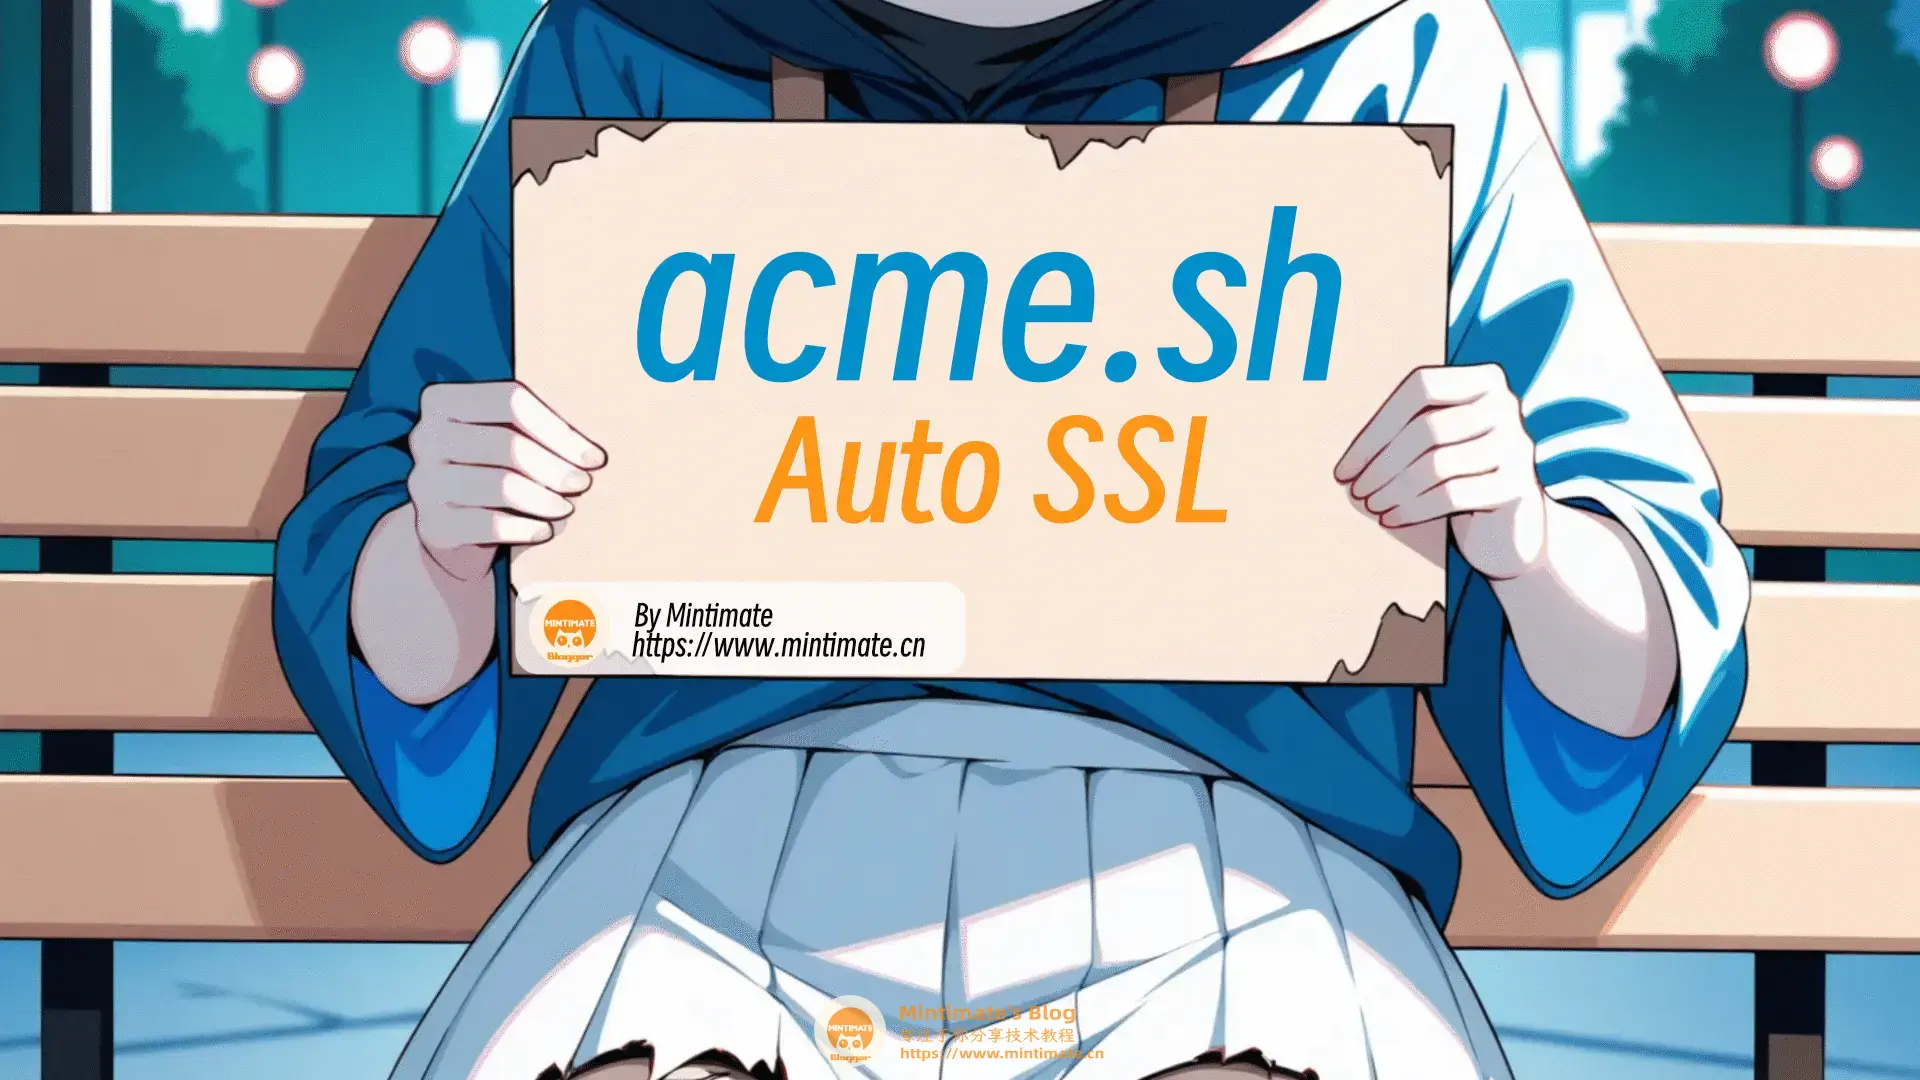 使用acme.sh给Web网站自动安装免费的SSL证书并自动更新，轻松实现HTTPS